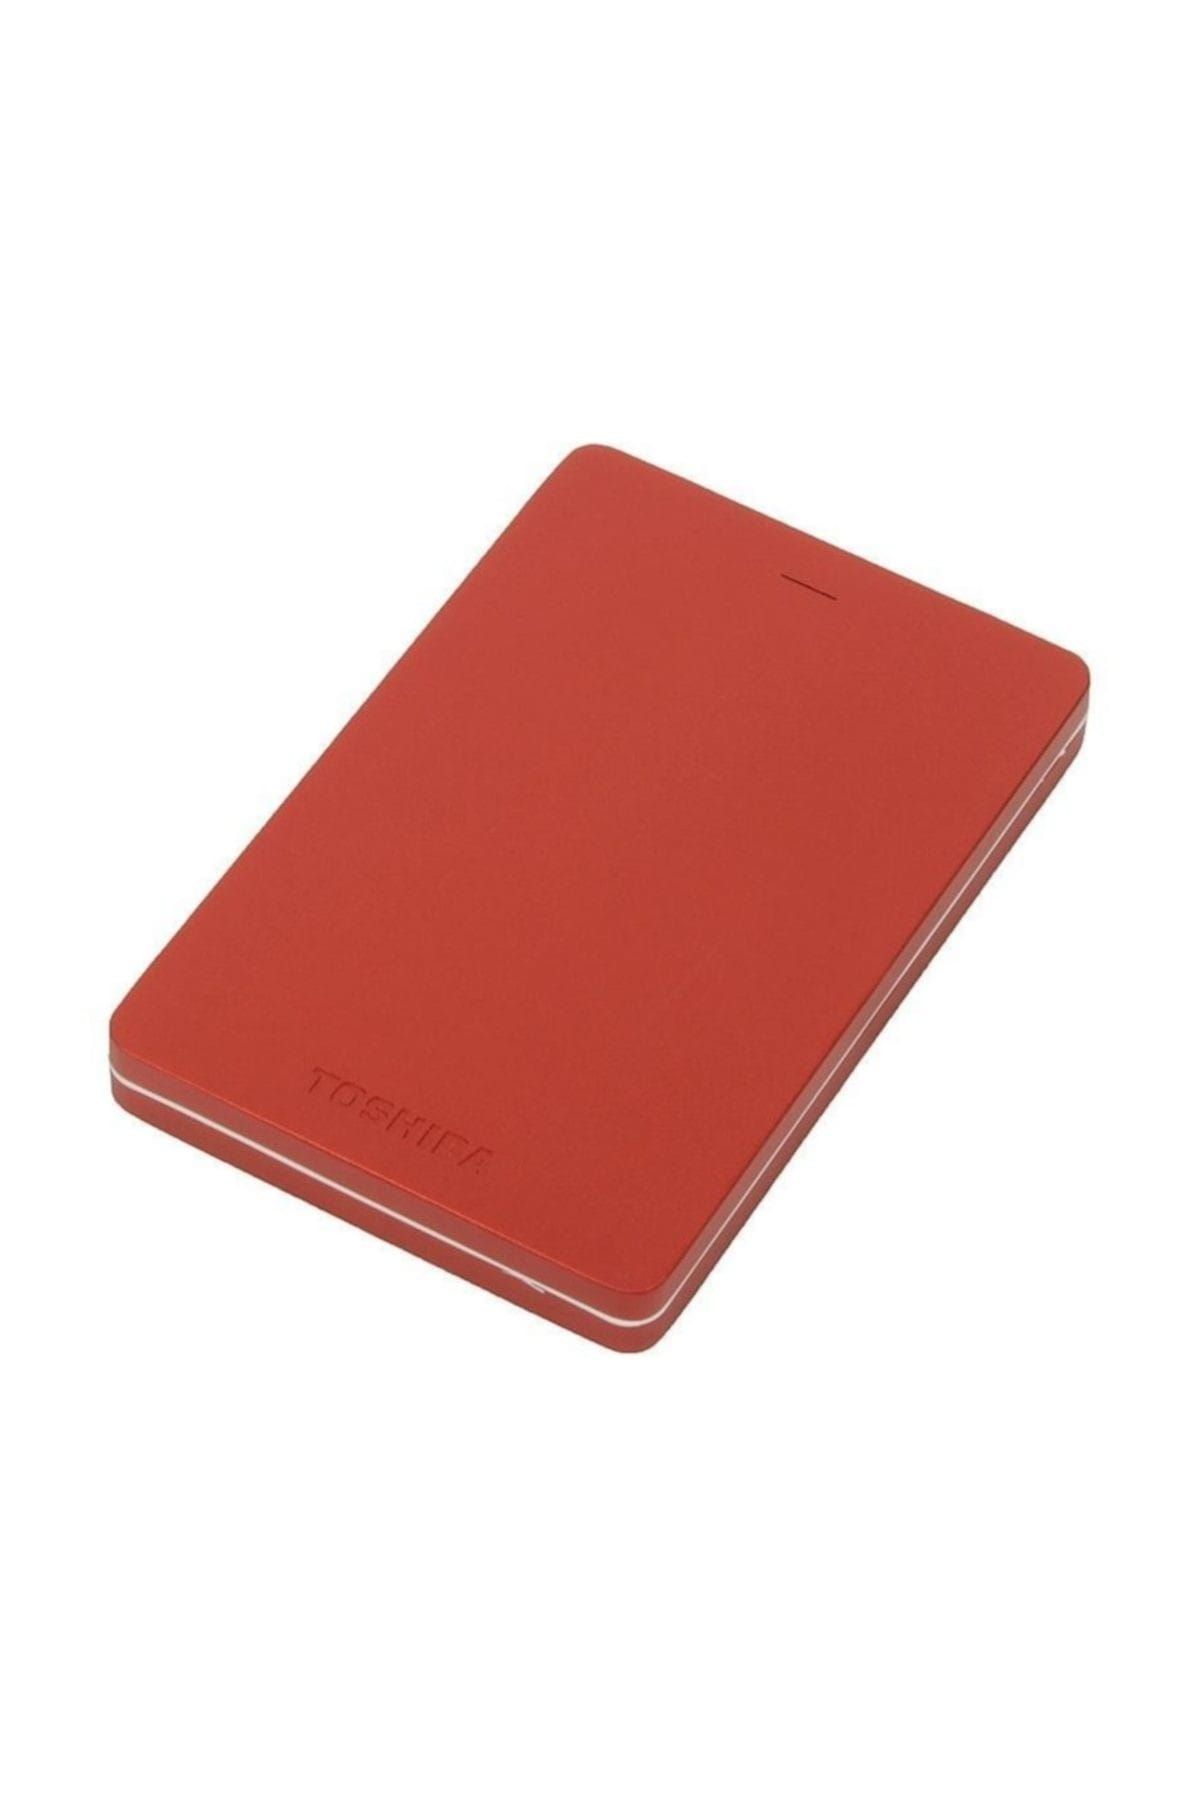 Toshiba 2.5'' Canvio Alu Kırmızı USB 3.0 Taşınabilir Disk 1TB HDTH310ER3AB